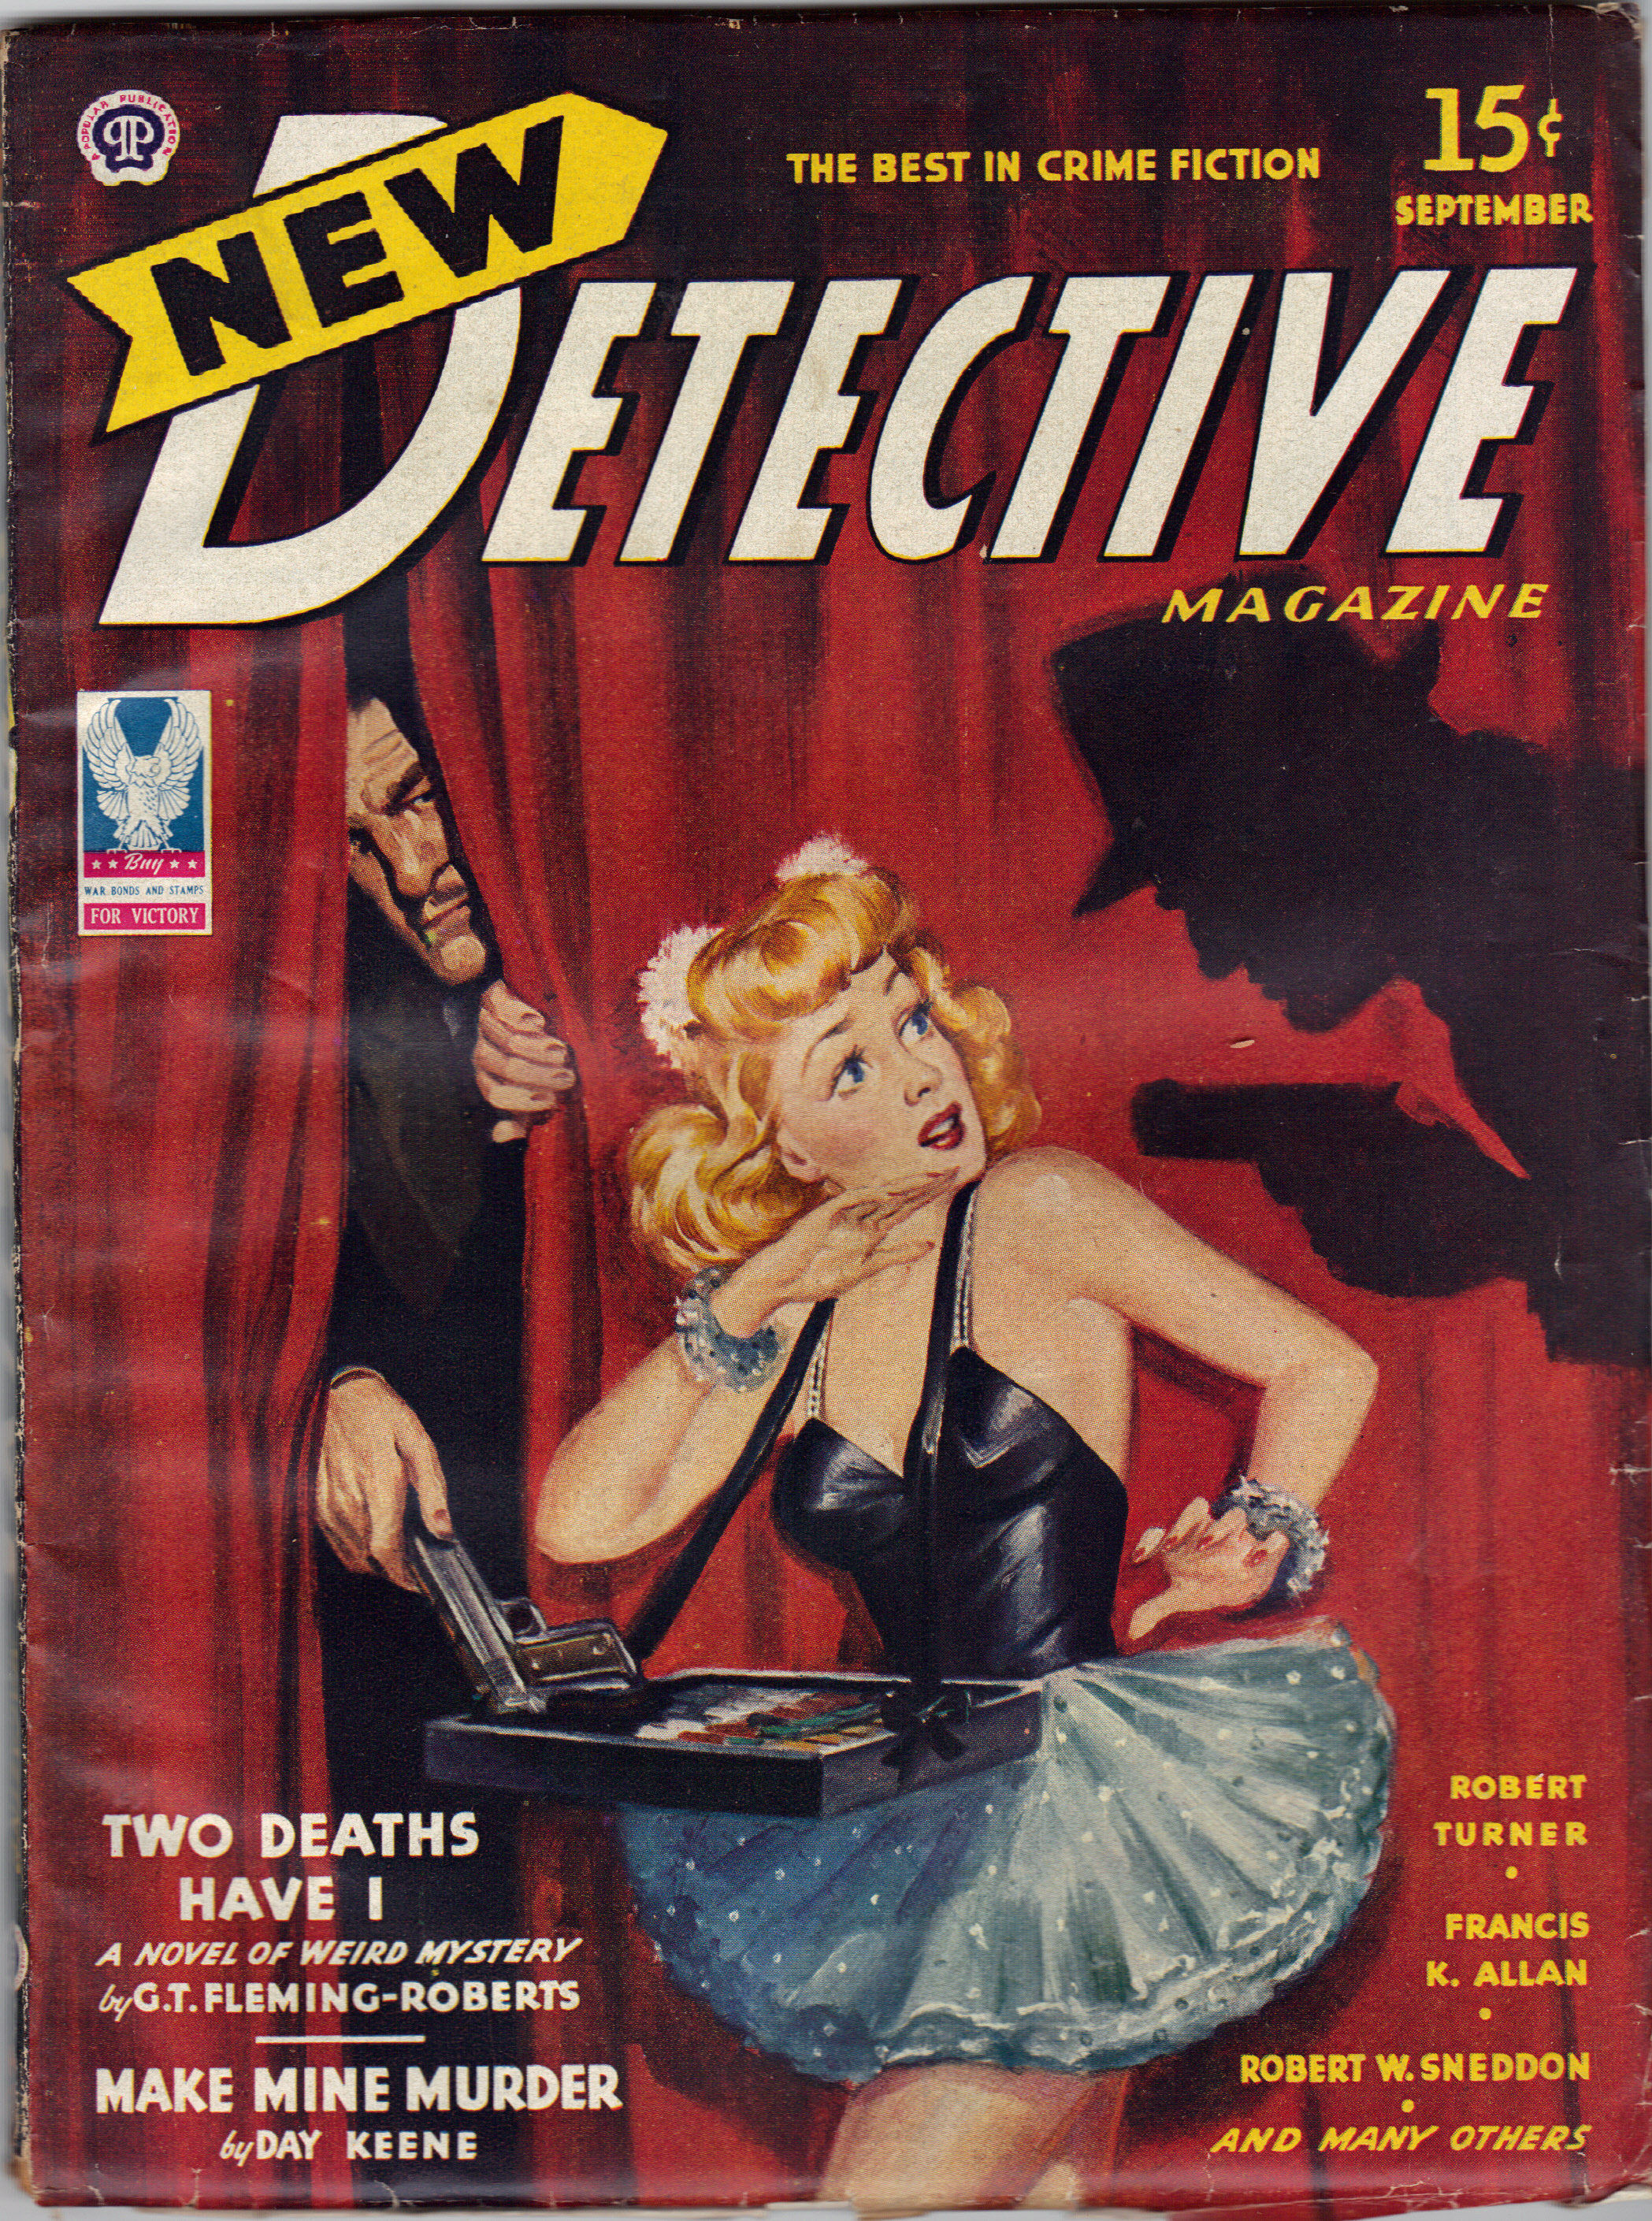 damien grimshaw recommends vintage detective magazine covers pic